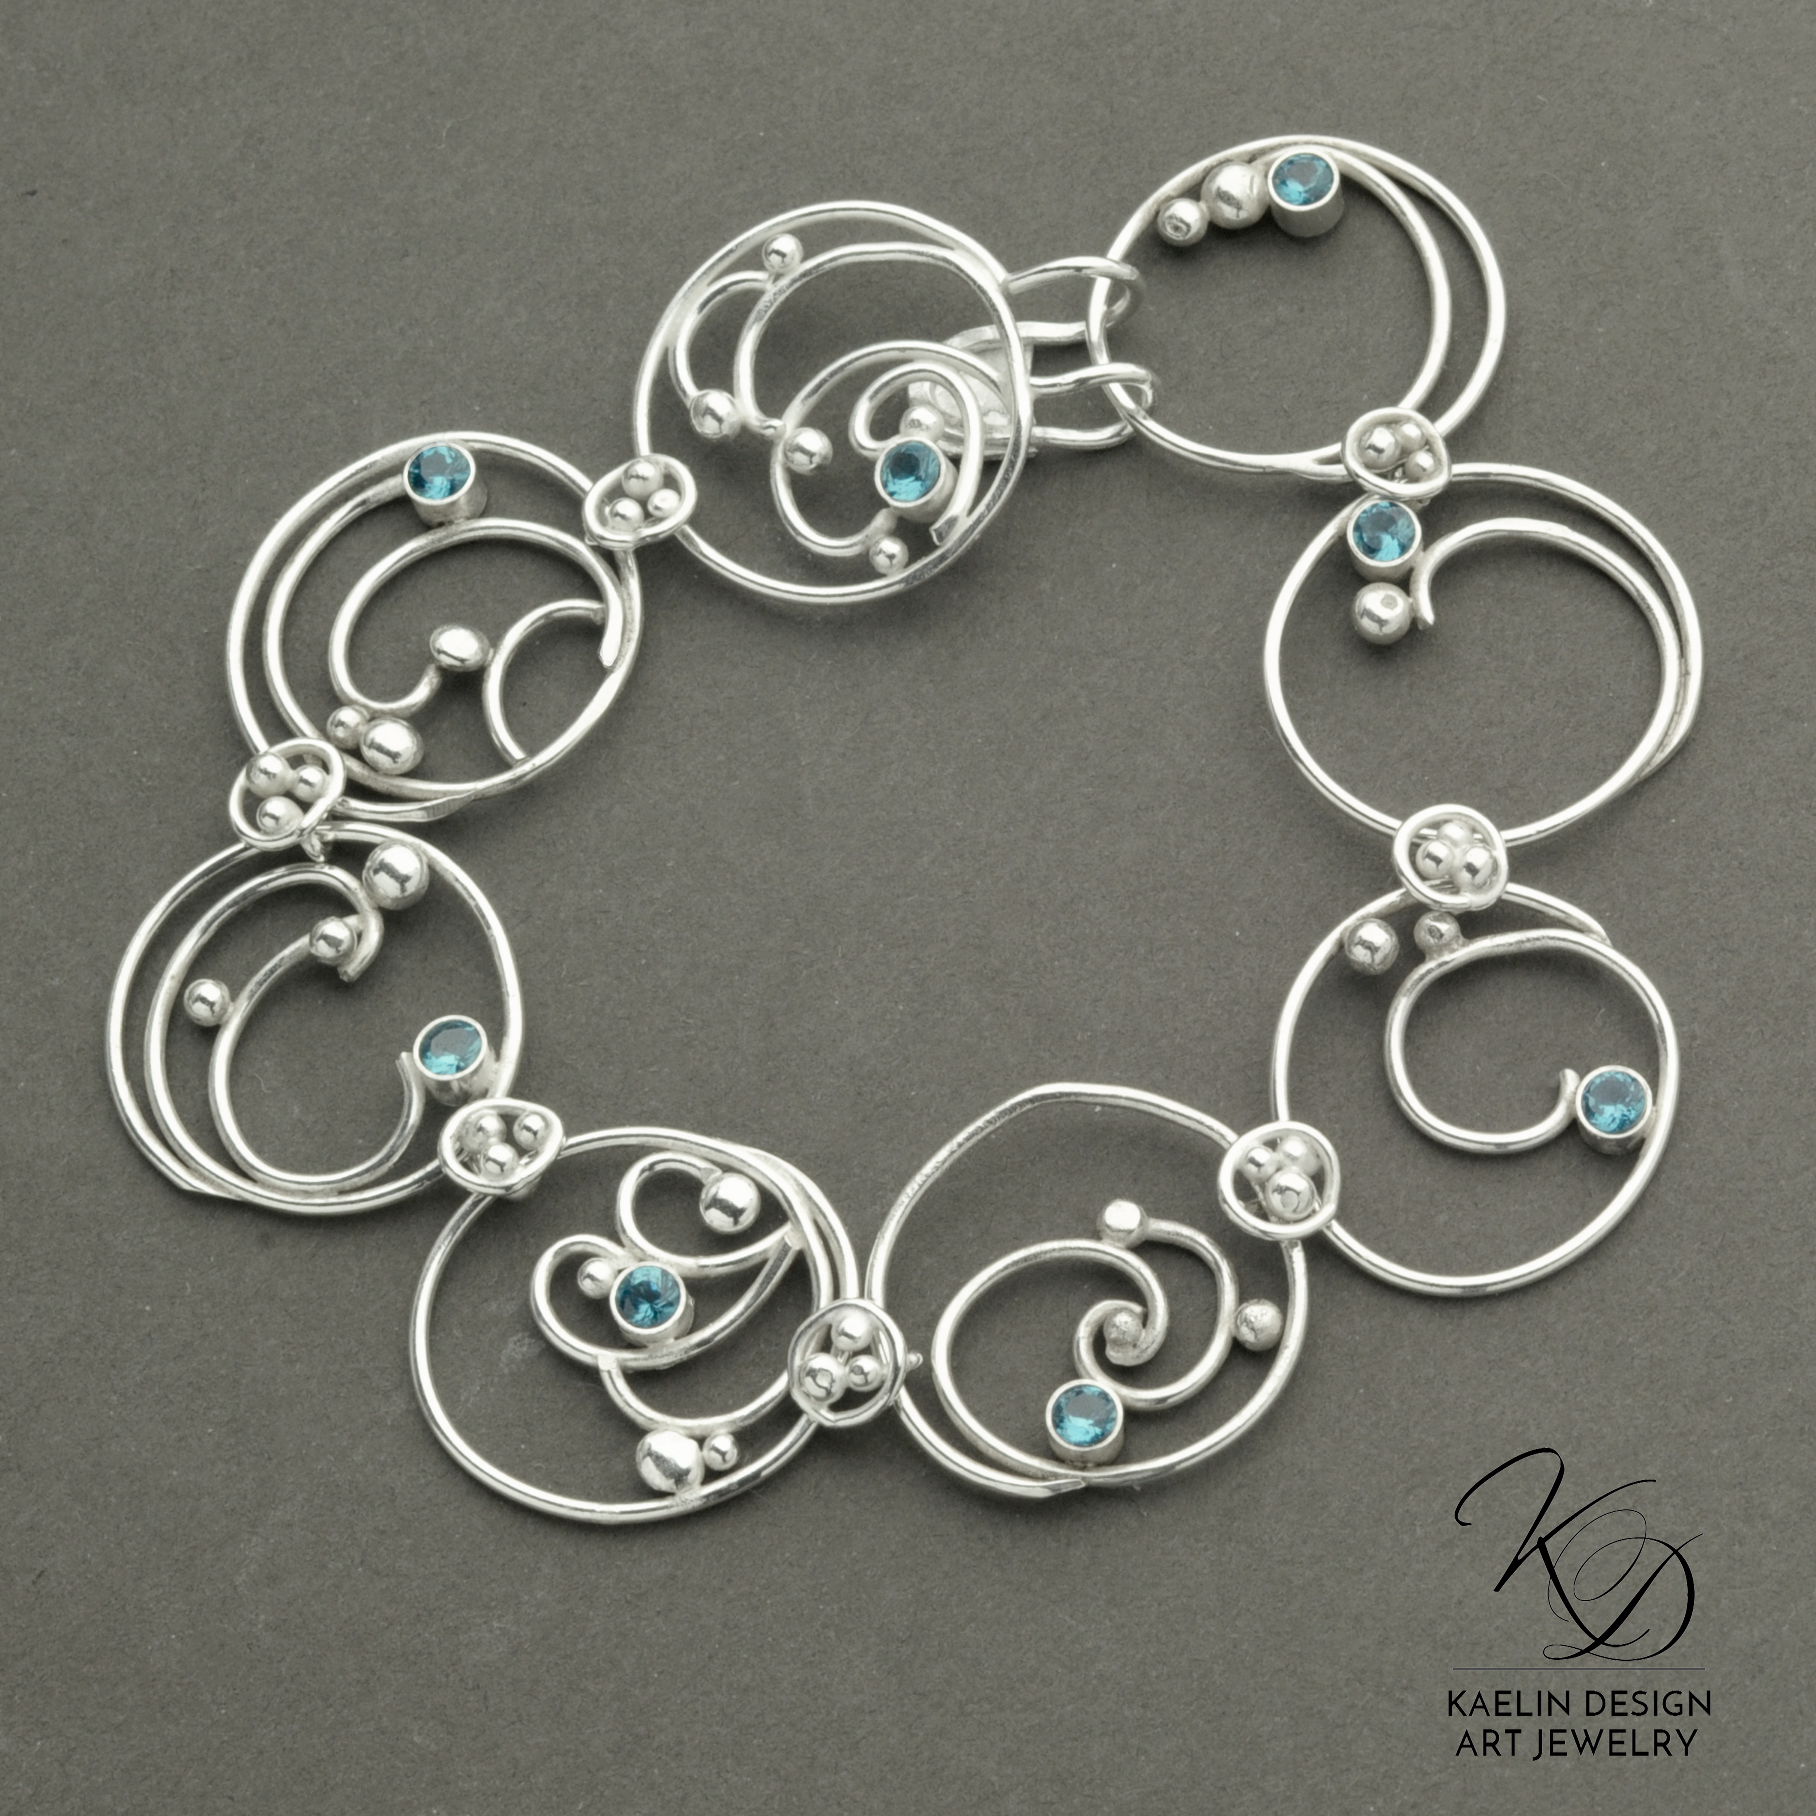 Hand Forged Sea Foam Silver Bracelet with London Blue Topaz by Kaelin Design Fine Art Jewelry